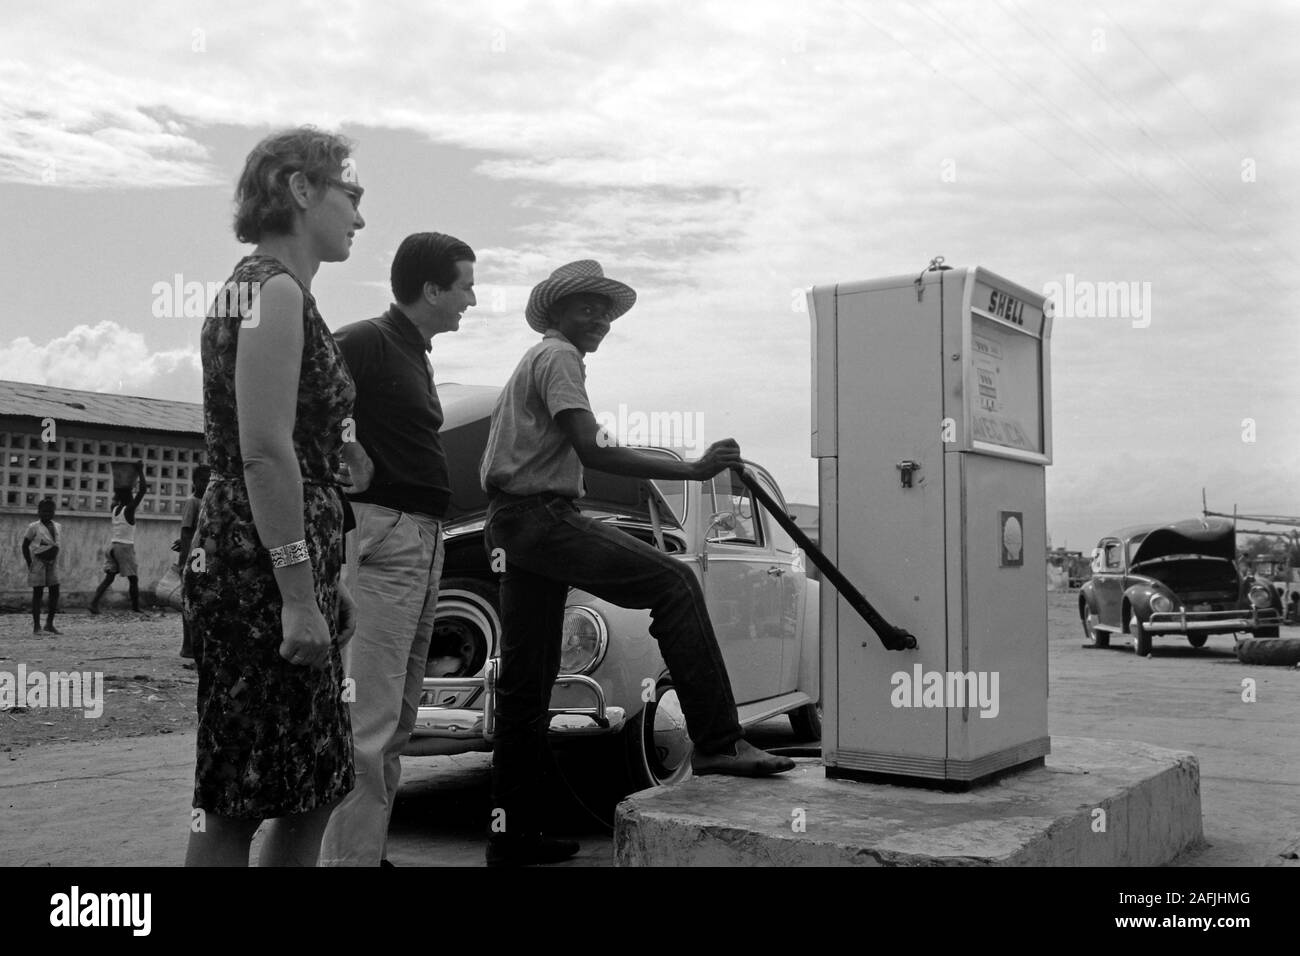 Tanken auf dem Land mit der Handpumpe, 1967. Refueling via handpump in a rural area, 1967. Stock Photo